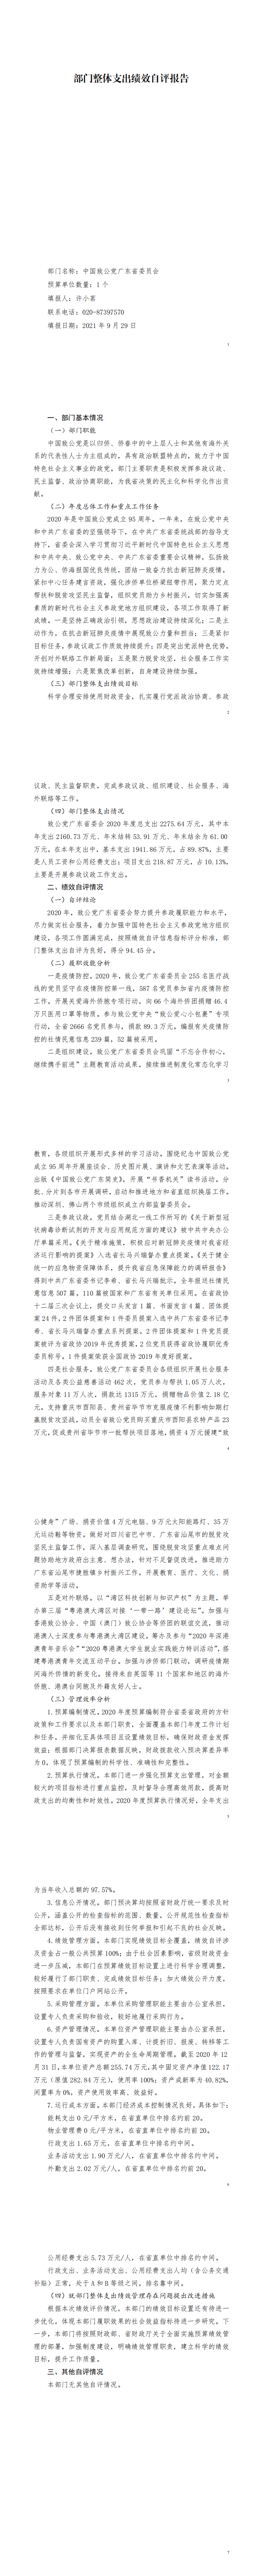 2020年中国致公党广东省委员会部门整体支出绩效自评_00.png